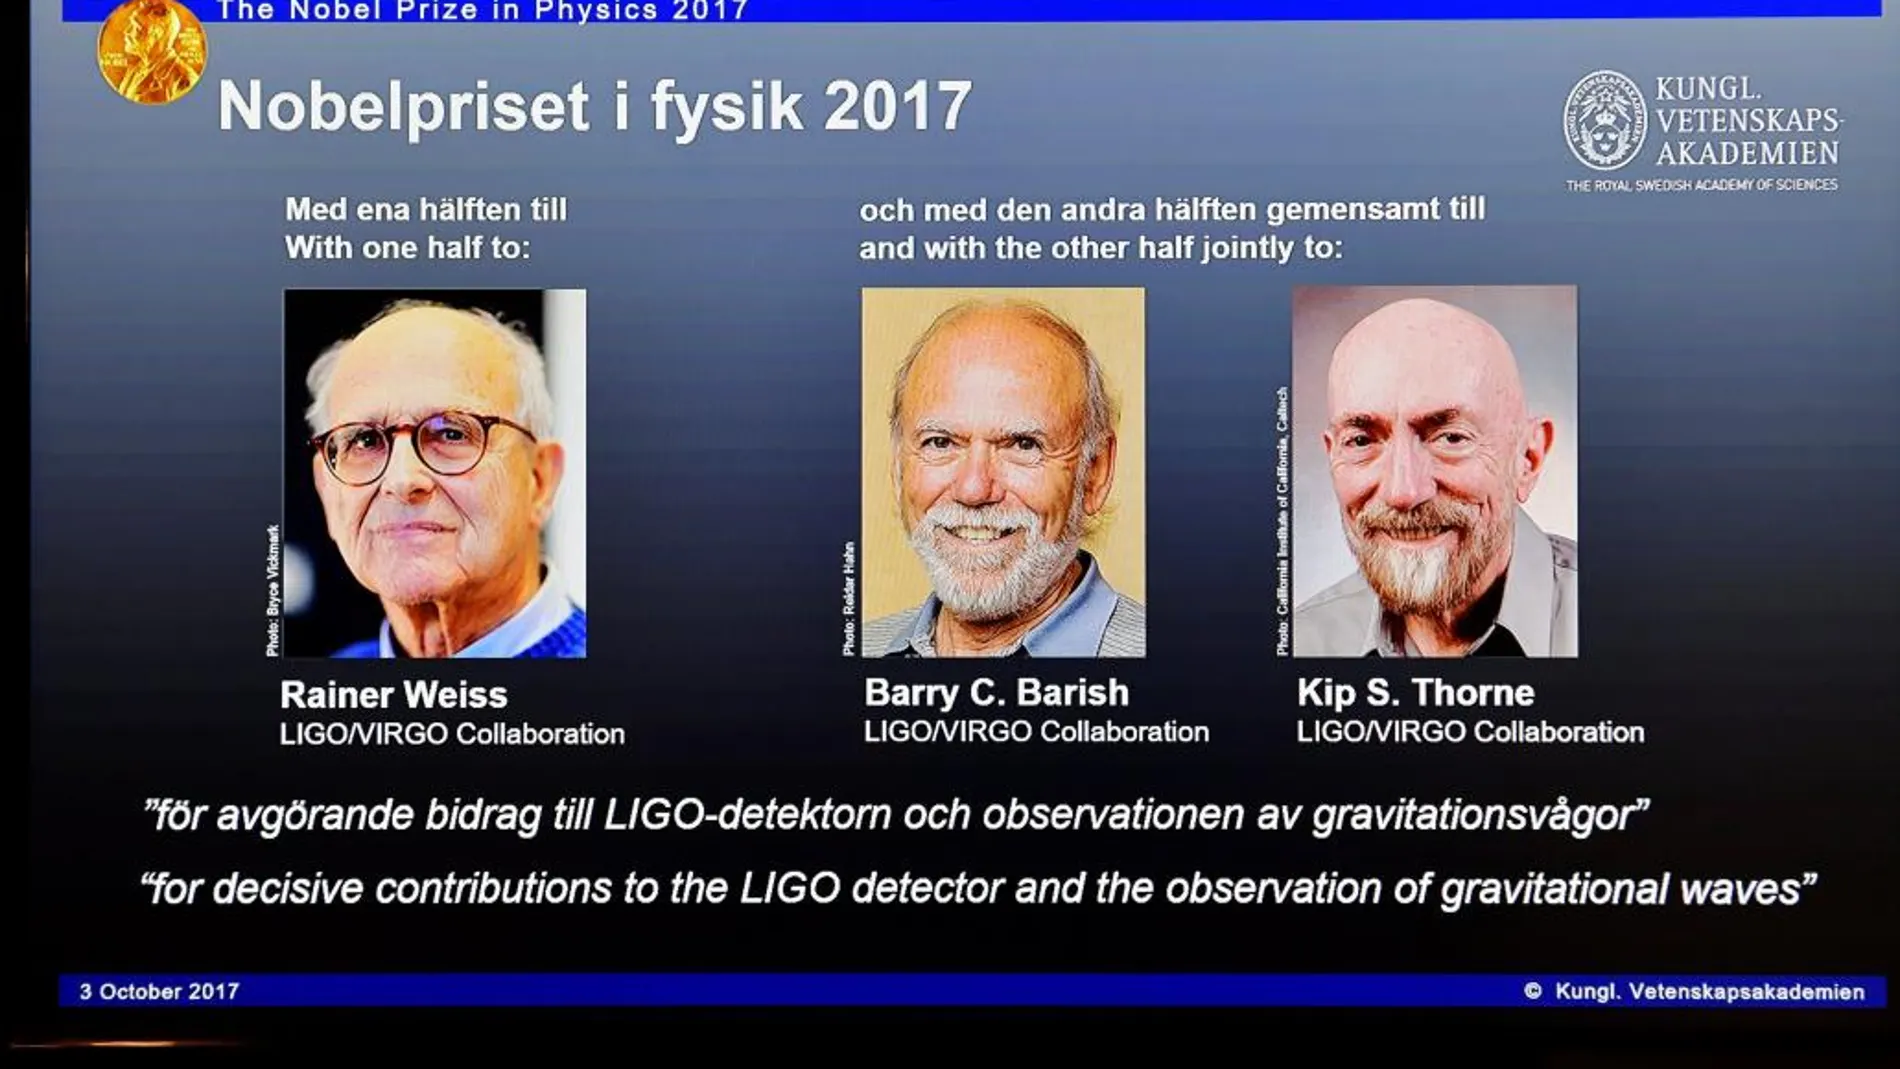 Rainer Weiss, Barry C. Barish y Kip S. Thorne fueron galardonados hoy con el Premio Nobel de Física 2017